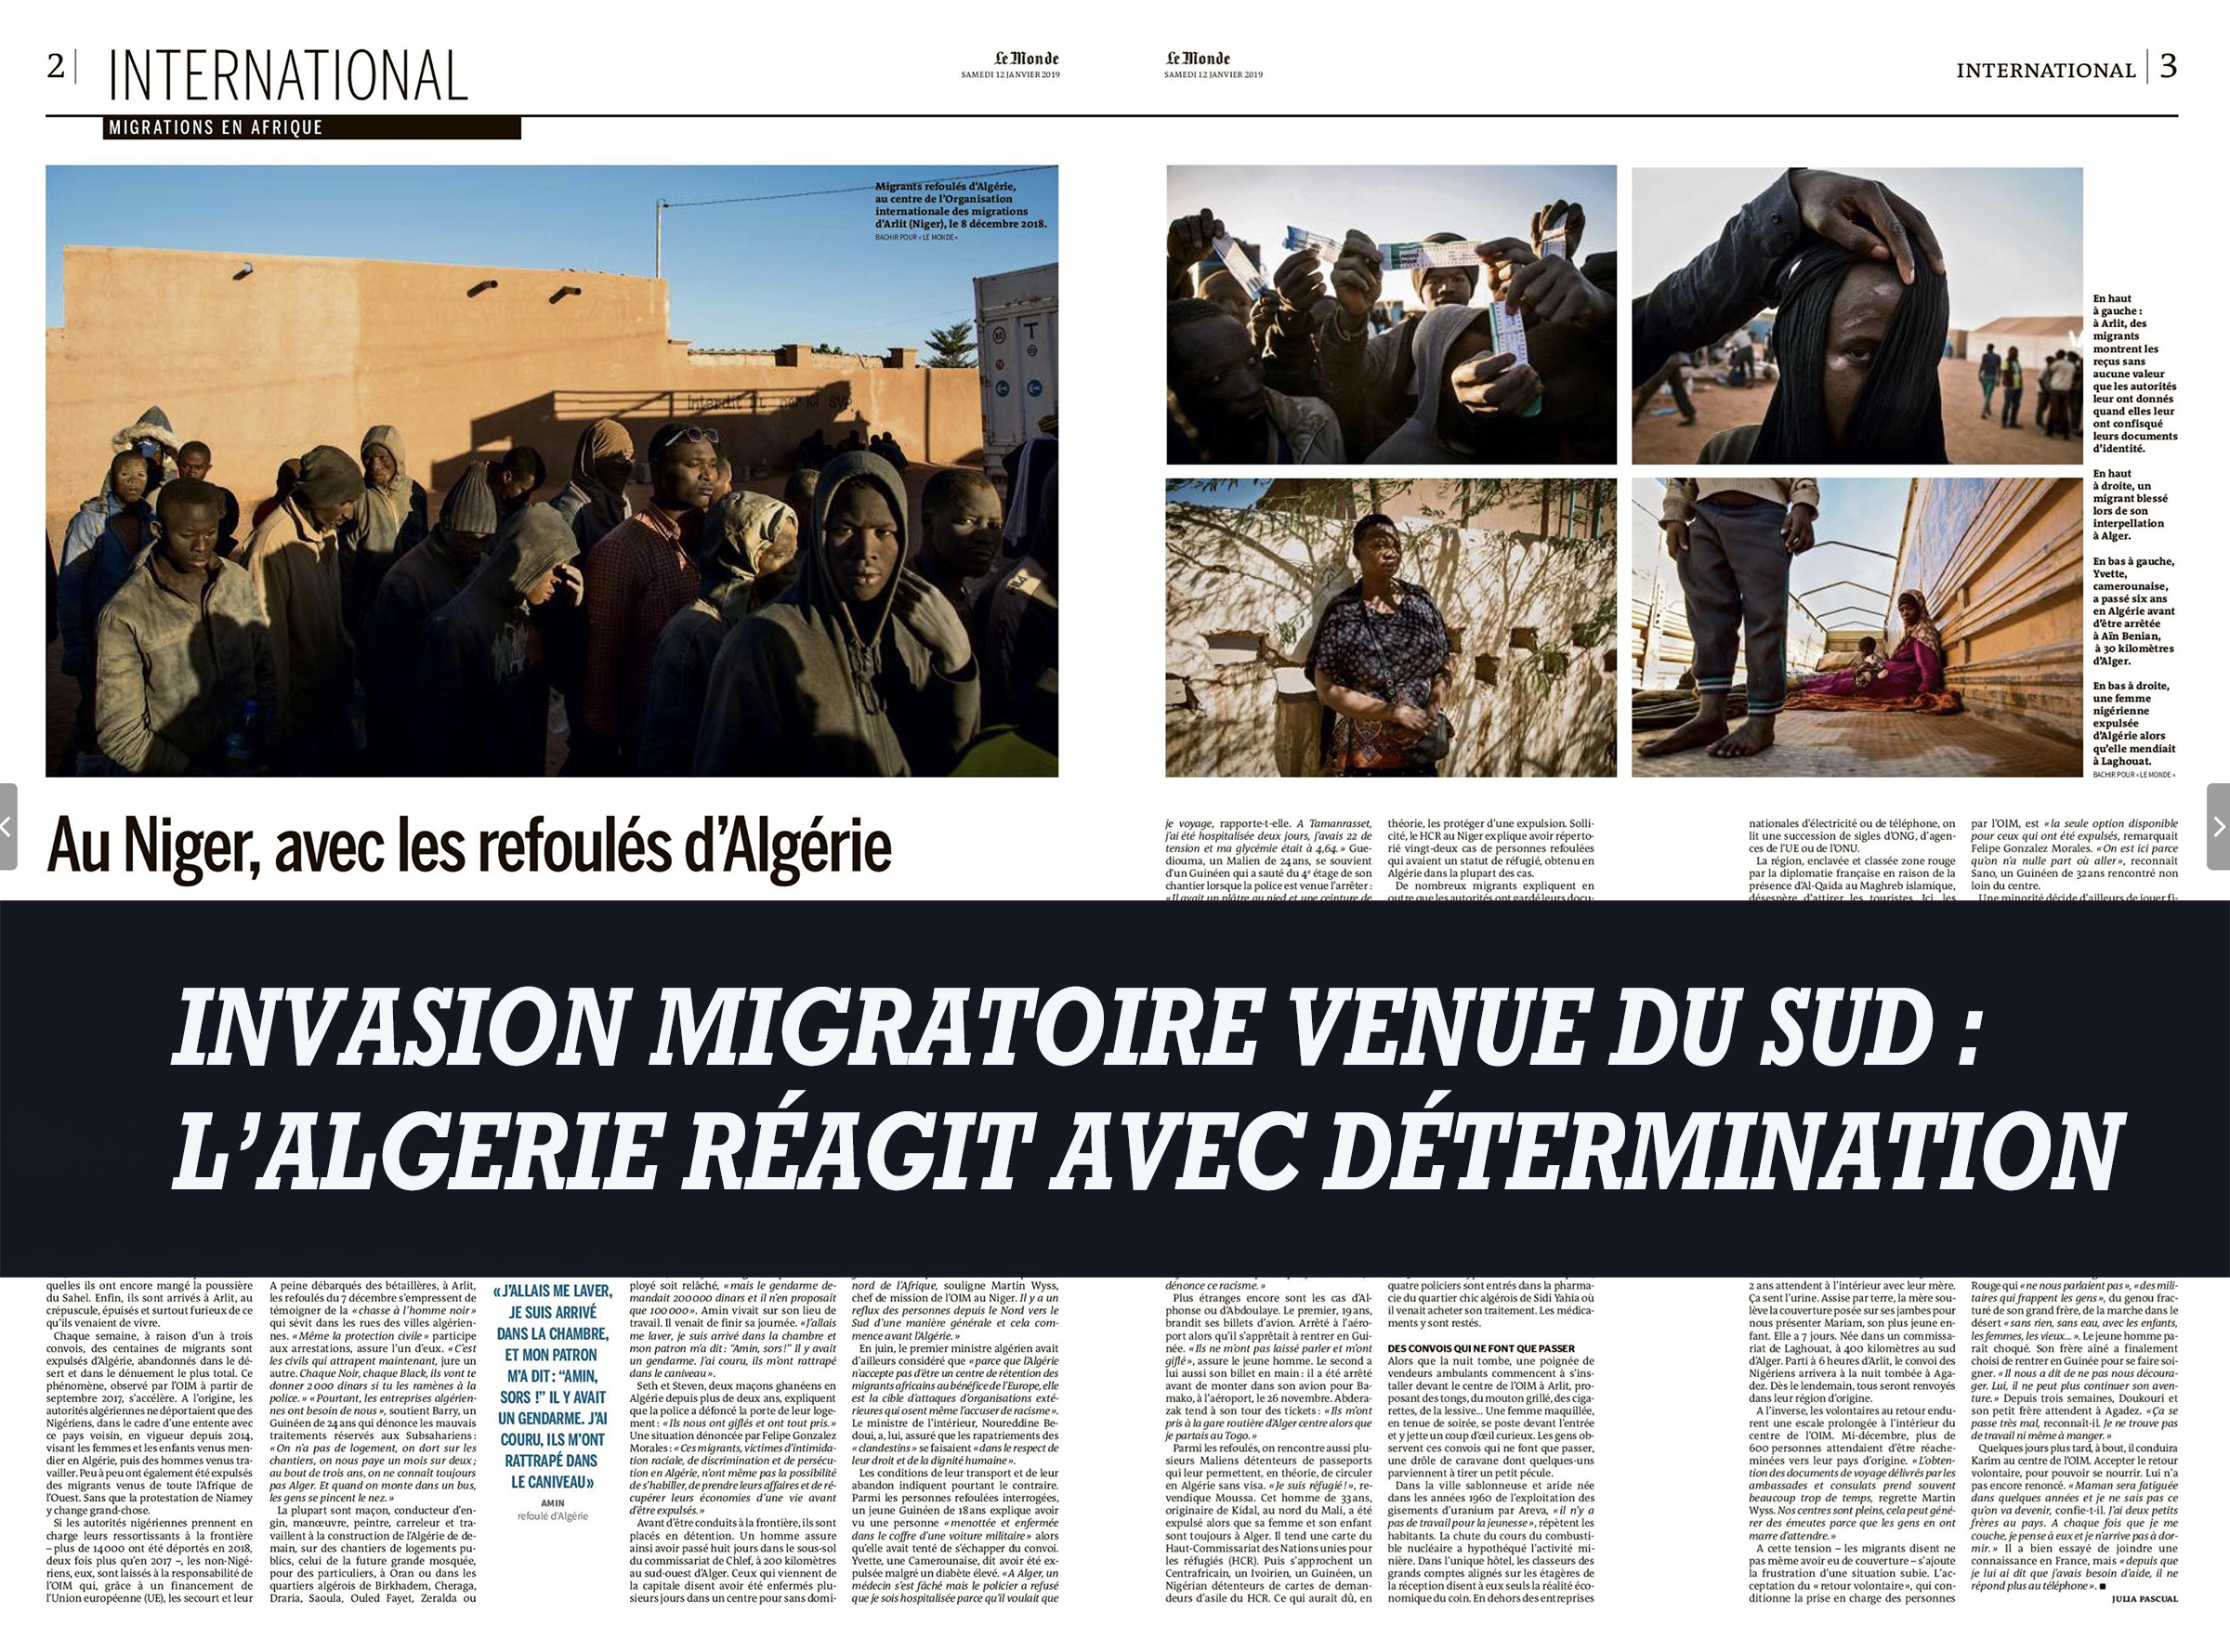 Read more about the article La politique ferme de remigration des autorités algériennes prouve qu’il est possible d’agir avec détermination contre la présence de clandestins et de pseudo réfugiés.